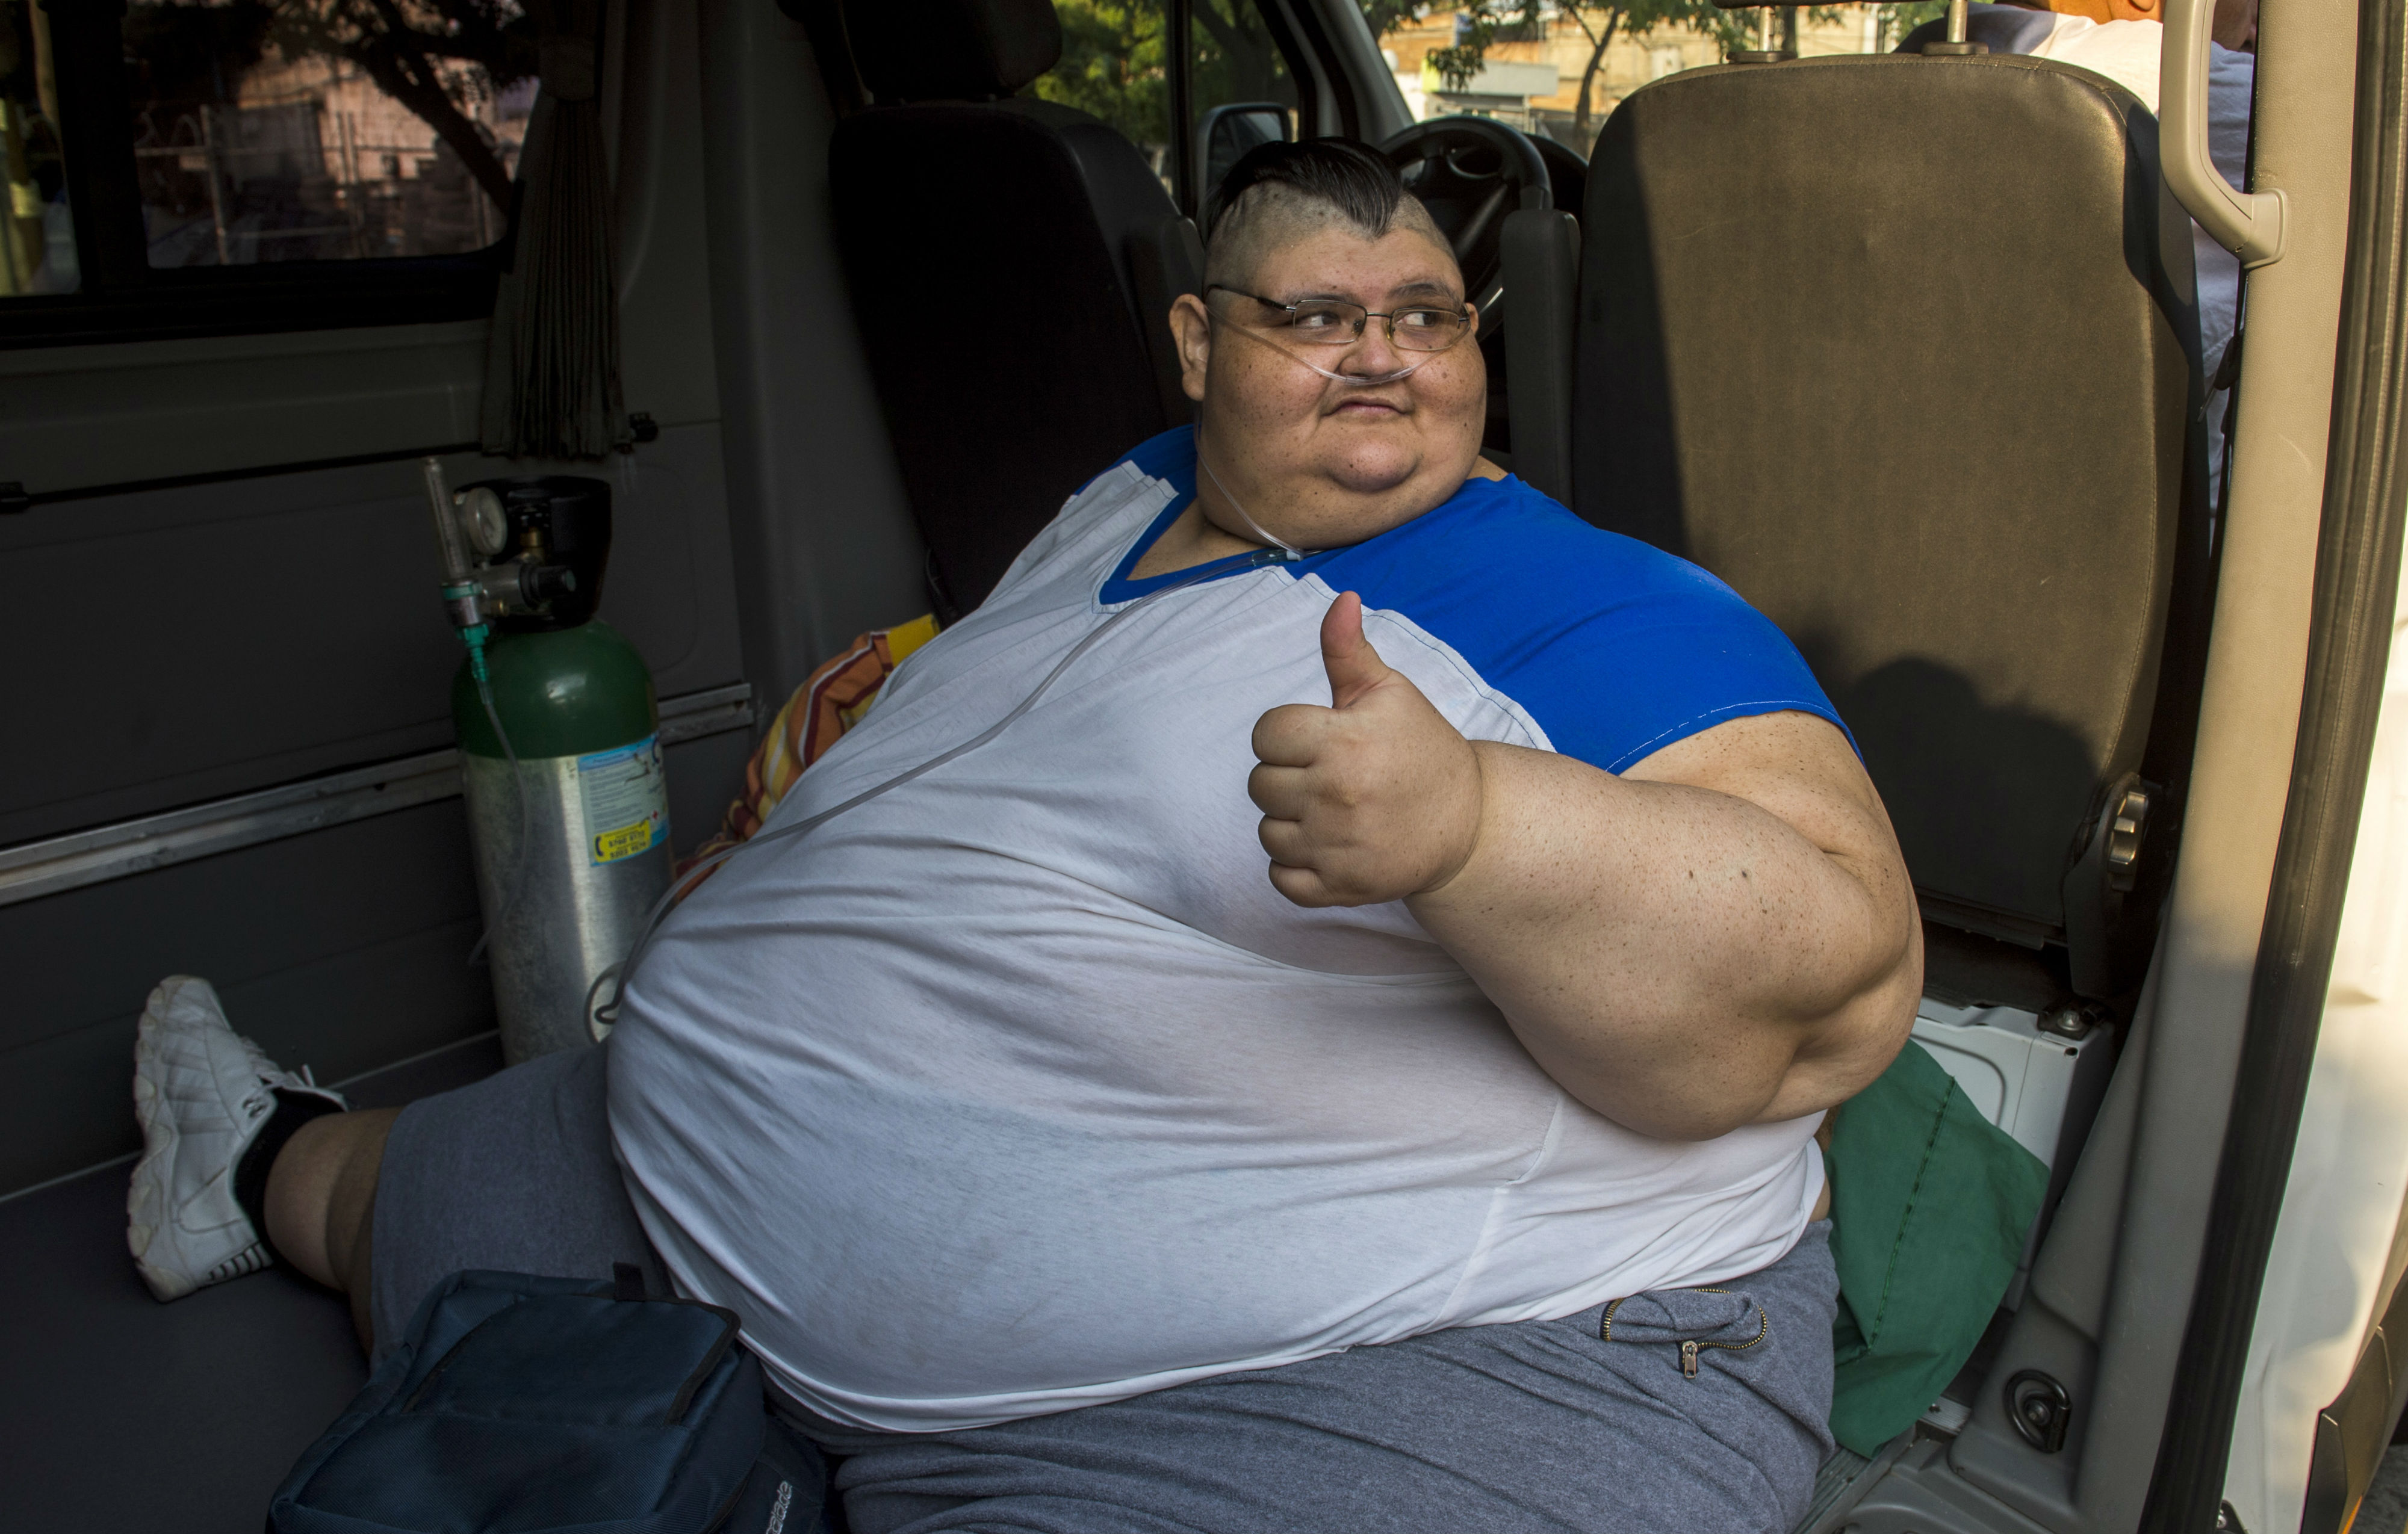 La perte de poids radicale de Juan Pedro Franco, anciennement l'homme le plus gros du monde